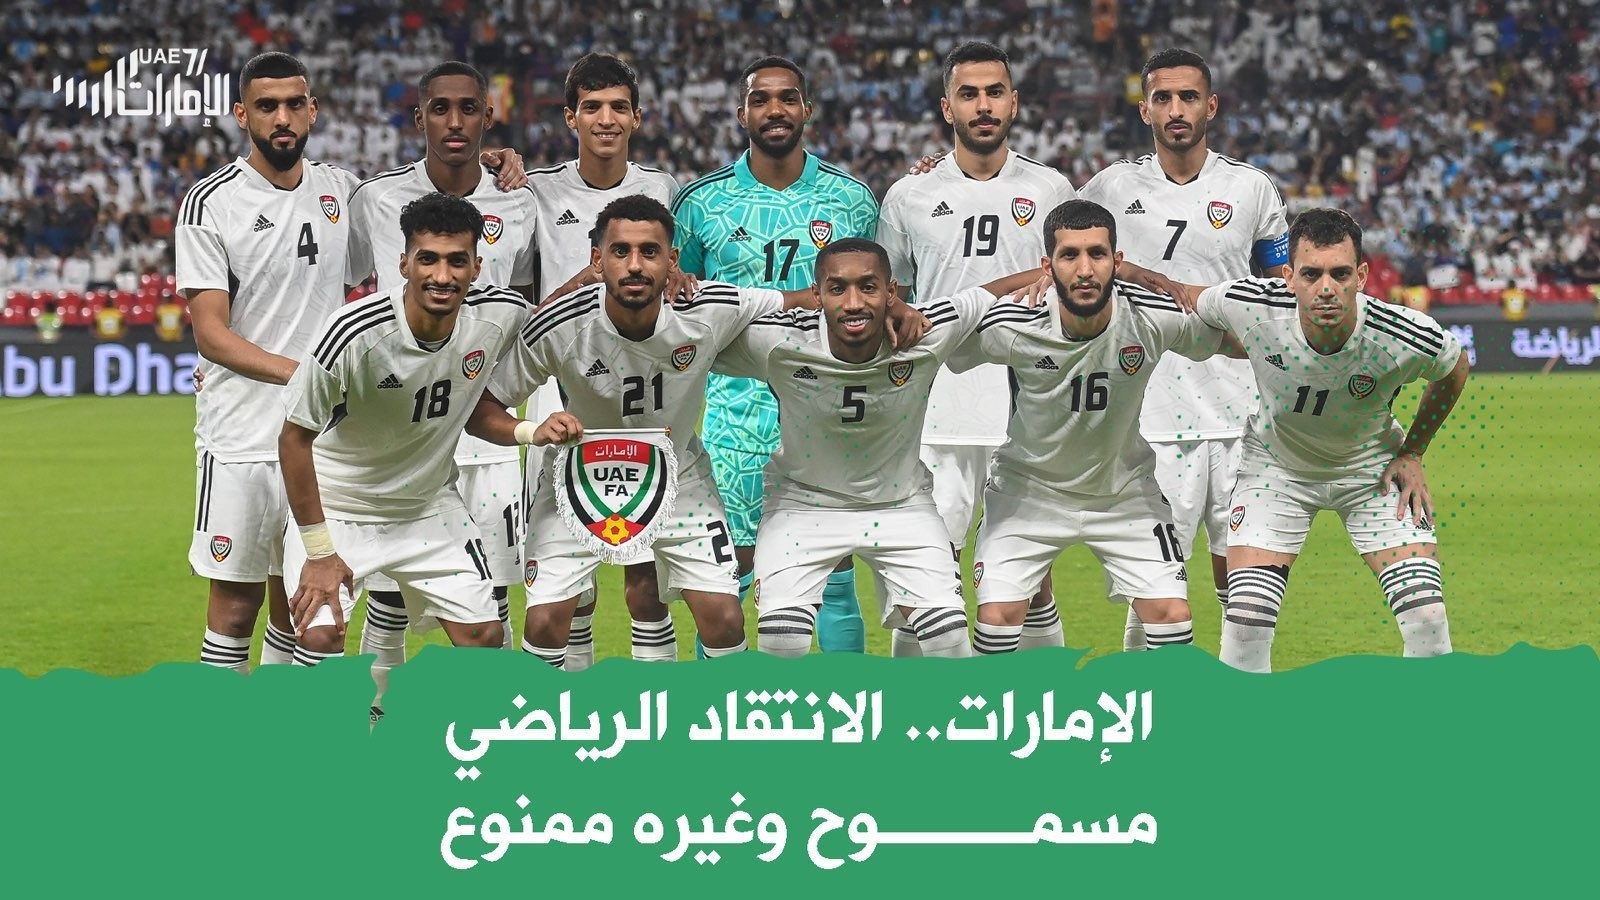 الإمارات .. الانتقاد الرياضي مسموح وغيره ممنوع